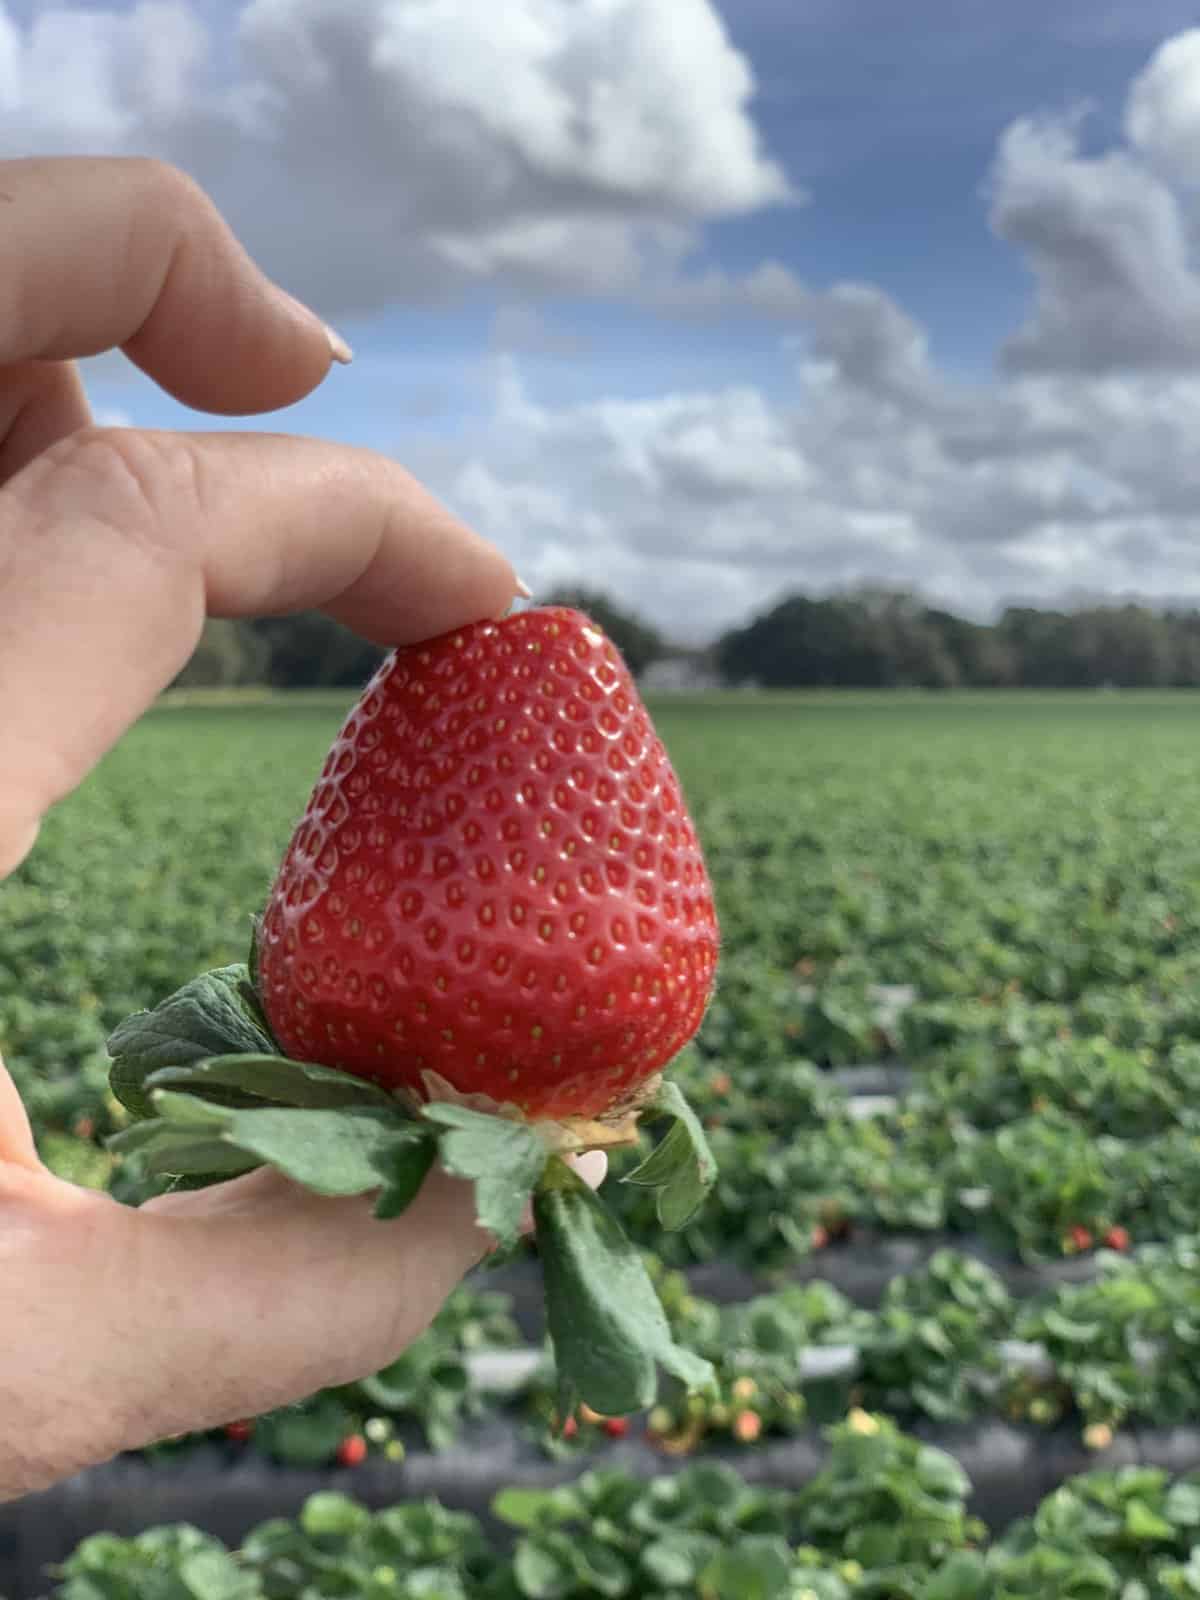 It’s Finally Here Florida Strawberry Season! Mary's Blog